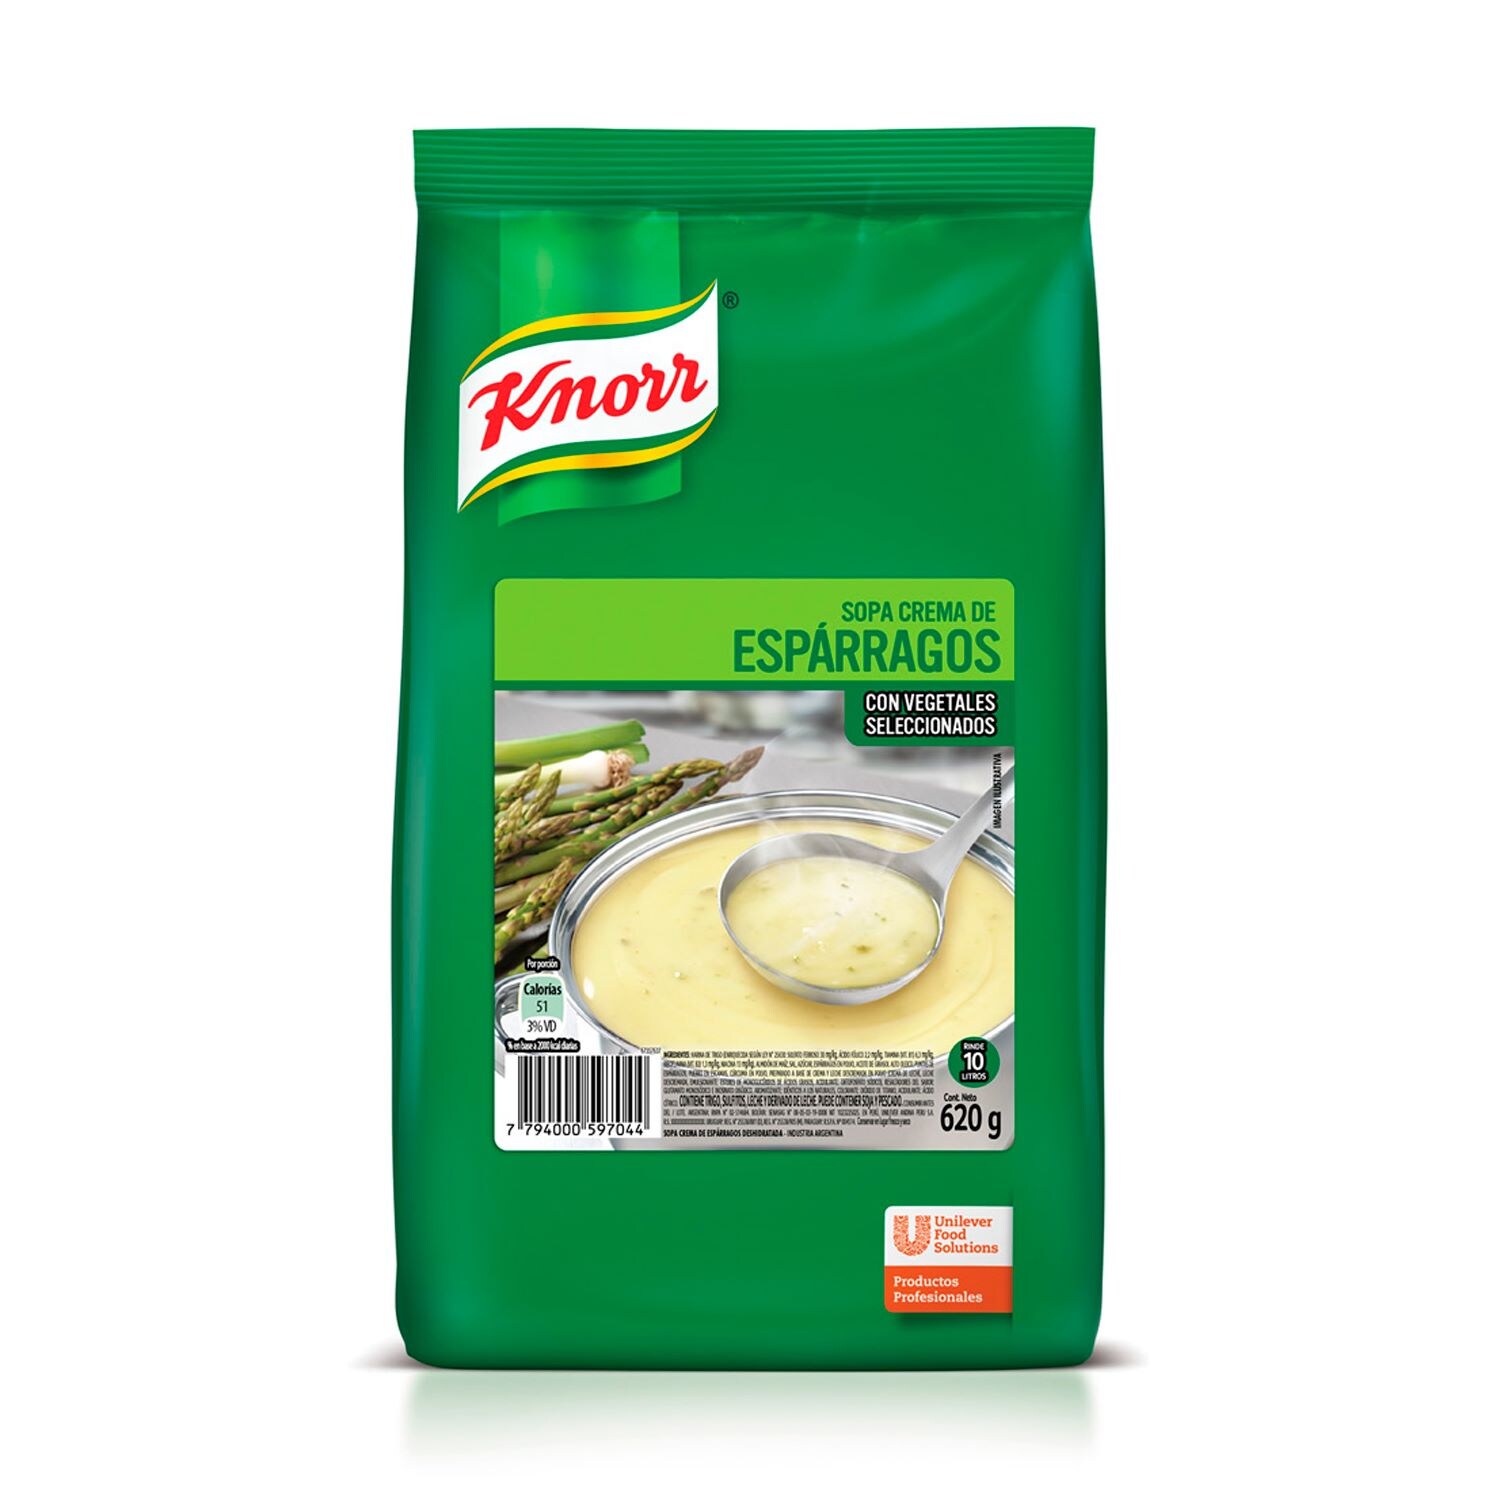 Sopa Crema Sabor Esparragos Knorr 6x620G (Exclusivo de Argentina, Uruguay)